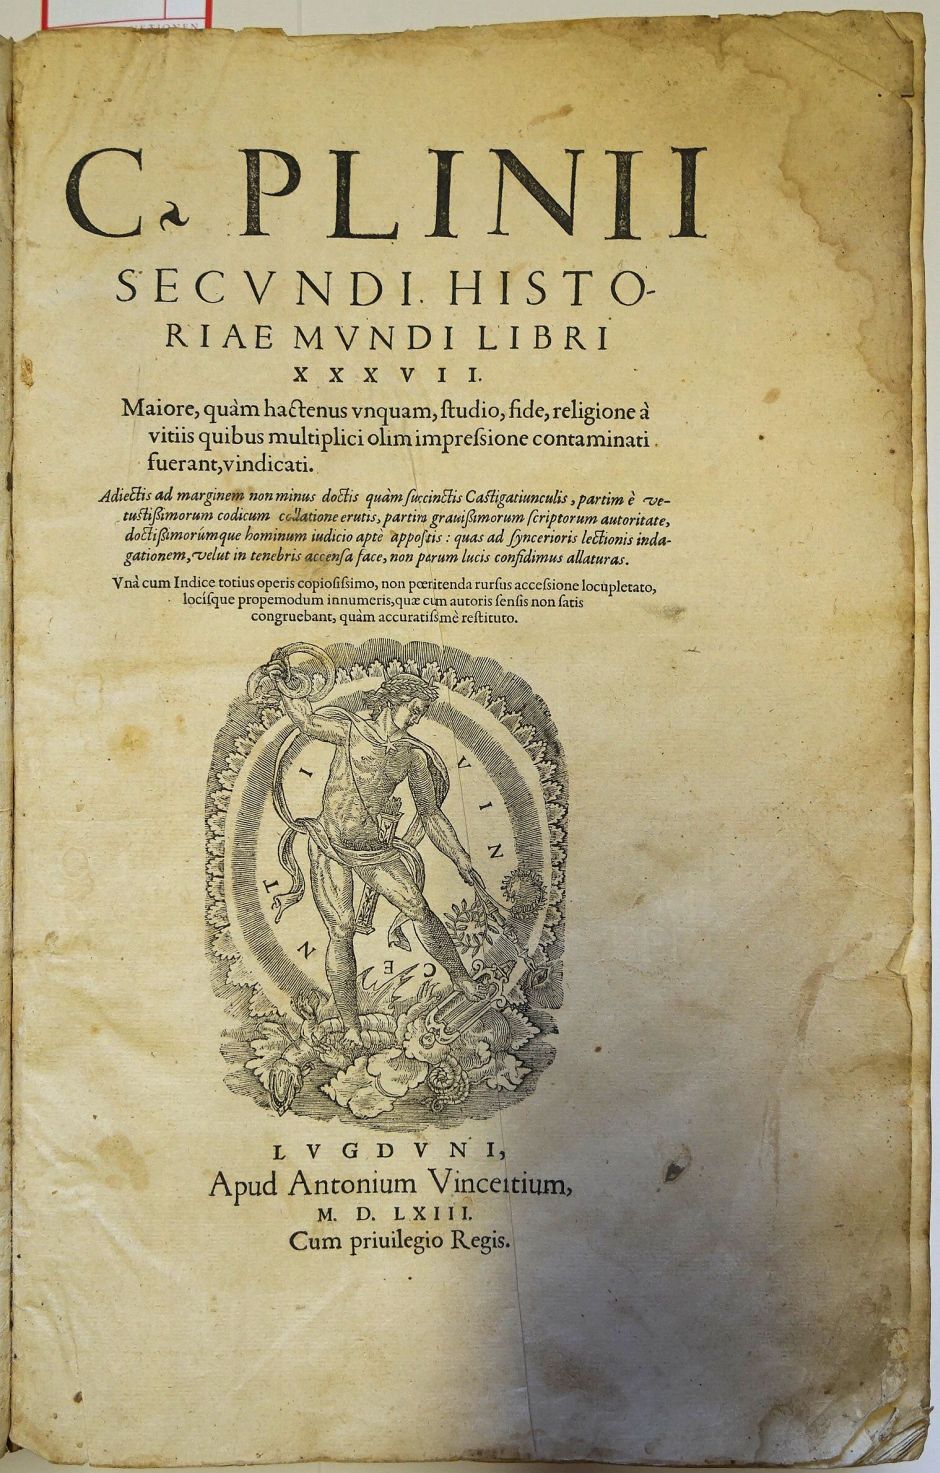 Lot 1172, Auction  115, Plinius Caecilius Secundus, Gaius, Historaiae mundi libri XXXVII